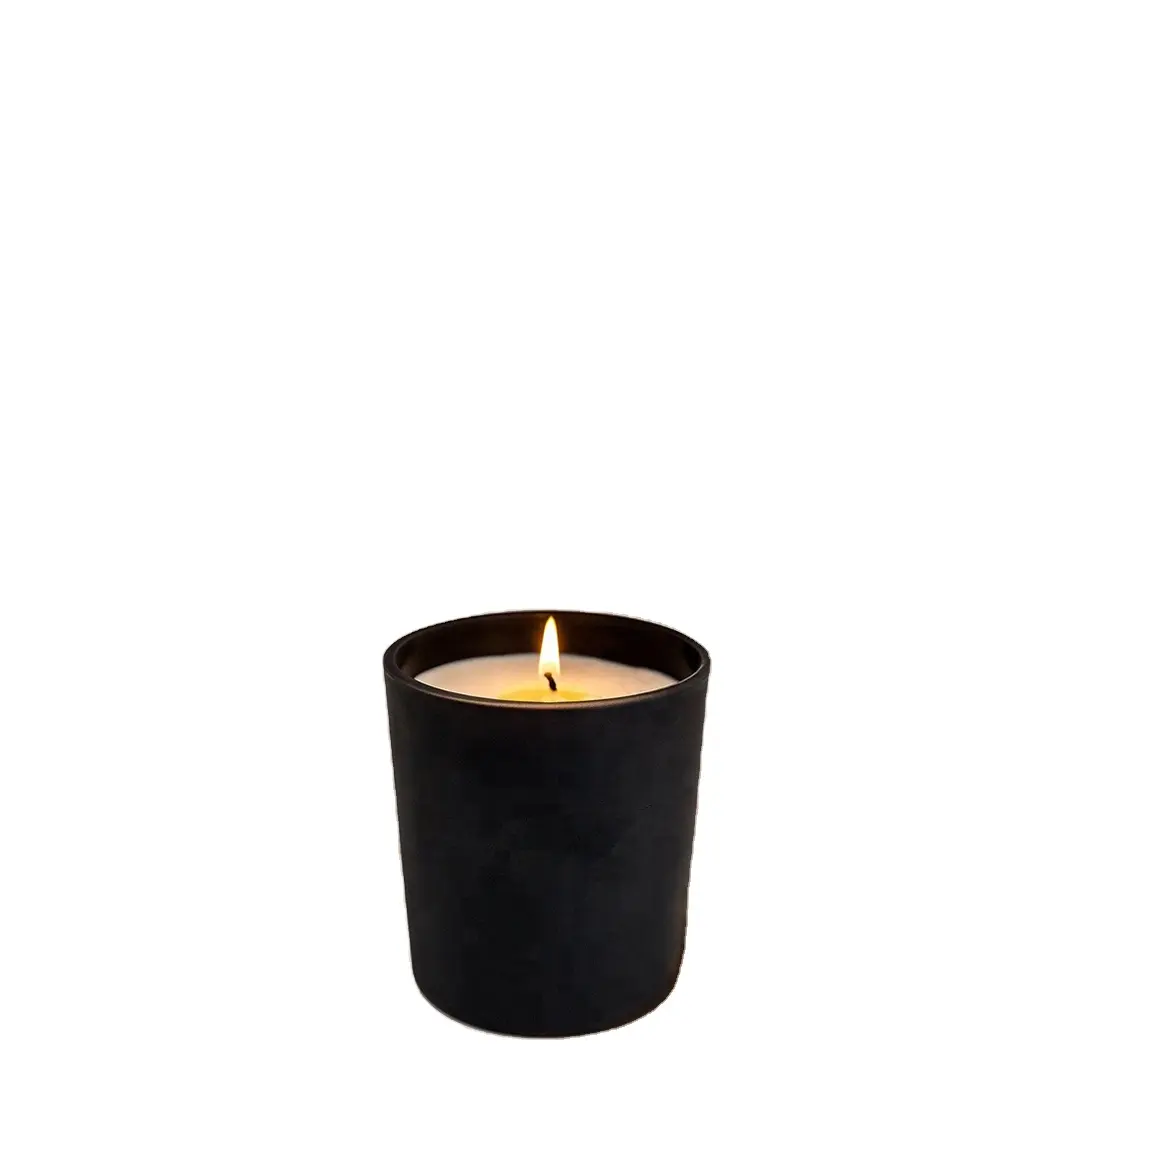 Bescheidenes Design quadratische Form graue Farbe leeres Kerzen glas für Duft kerzen der Haupt duft dekoration